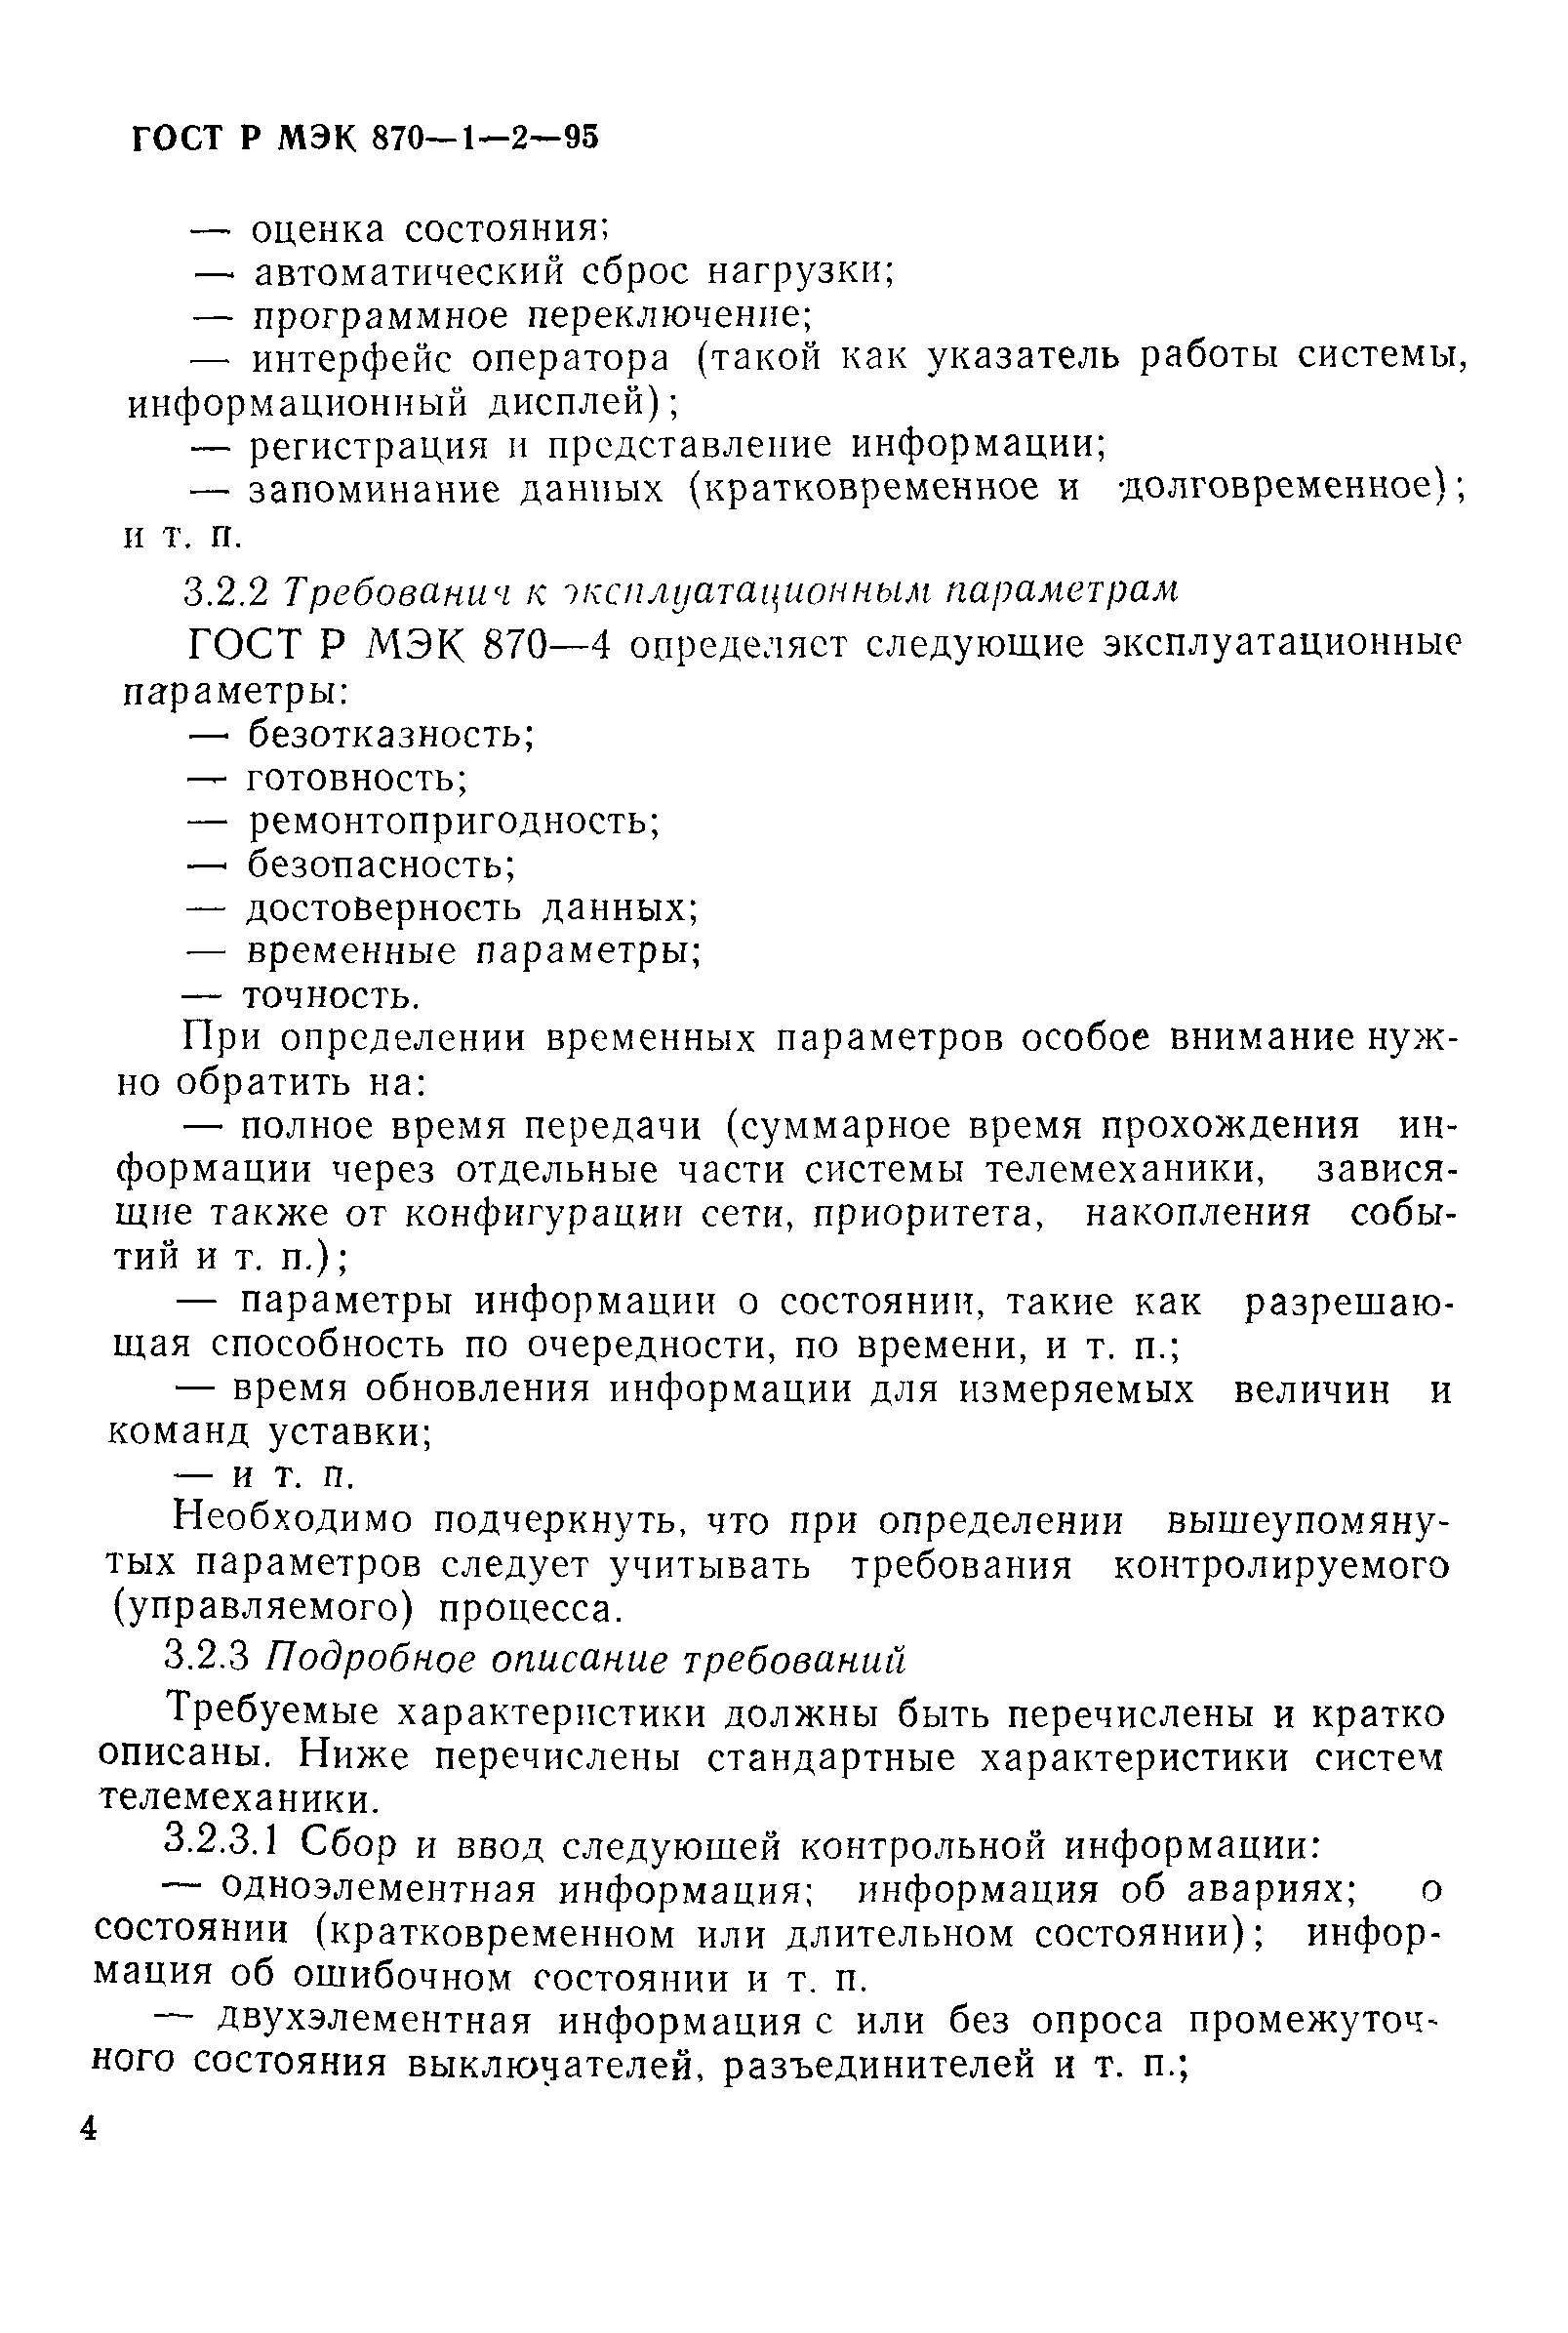 ГОСТ Р МЭК 870-1-2-95